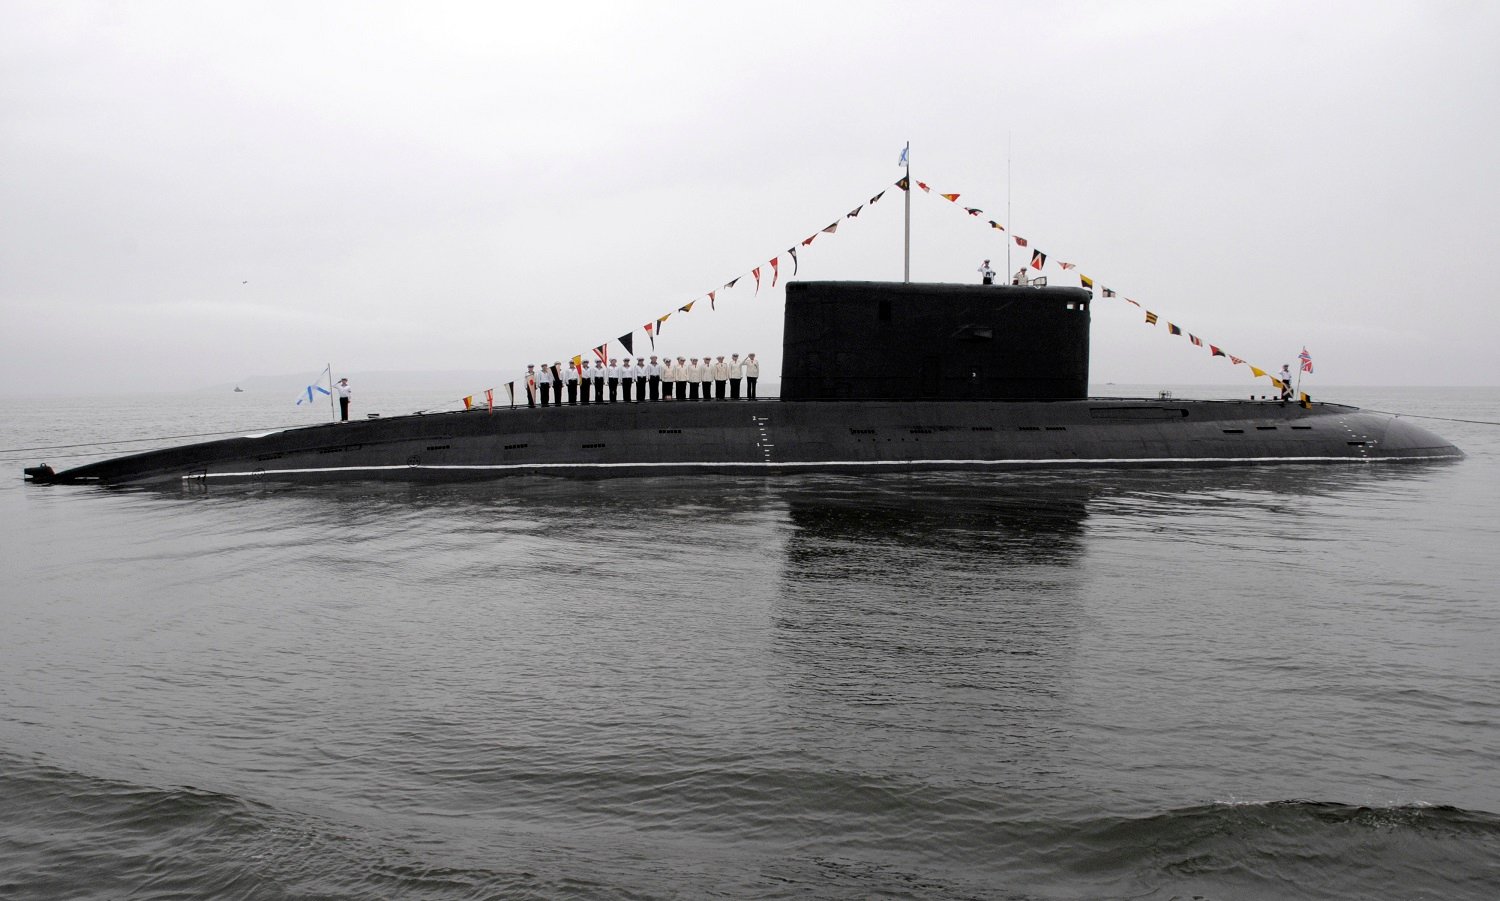 Kilo-Class Submarine